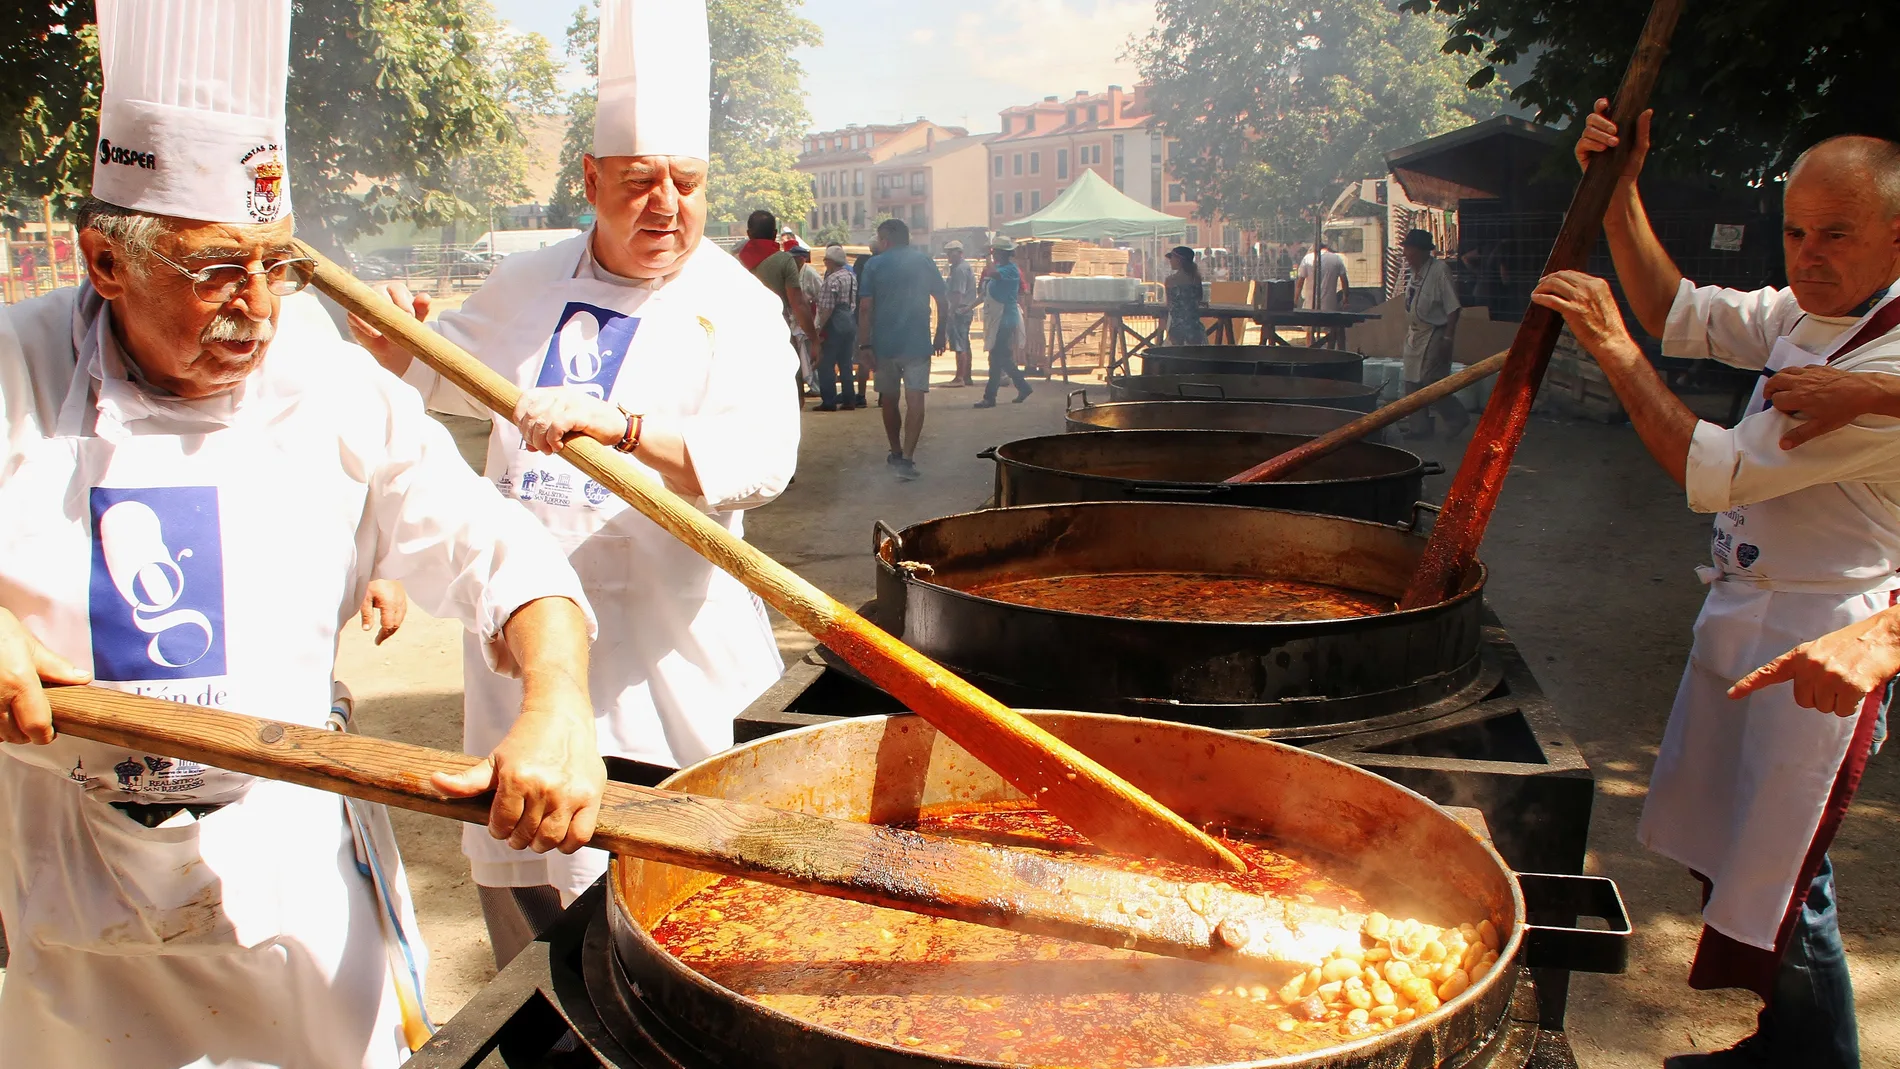 Día de San Luis en la Granja, con la tradicional fiesta y degustación de los judiones